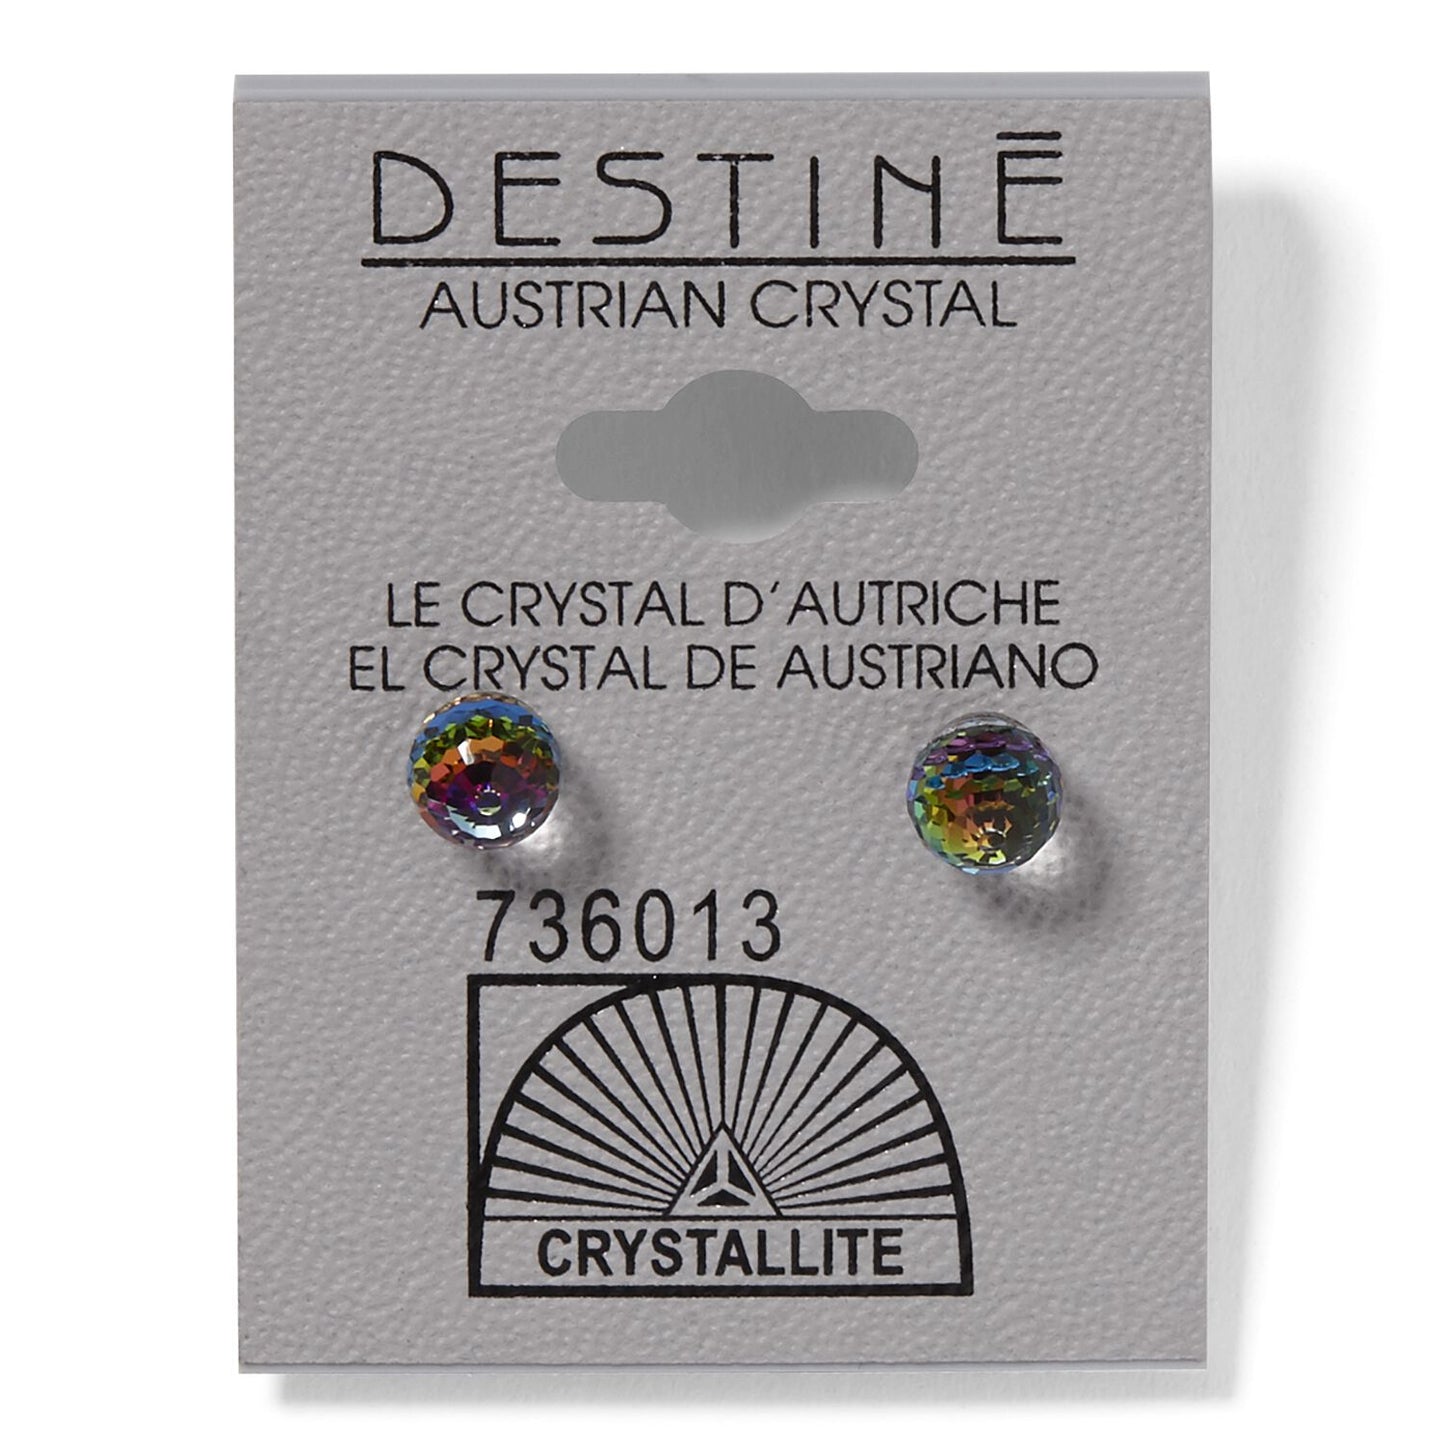 Crystallite Destine Vitrail Medium 6mm Faceted Ball Earring